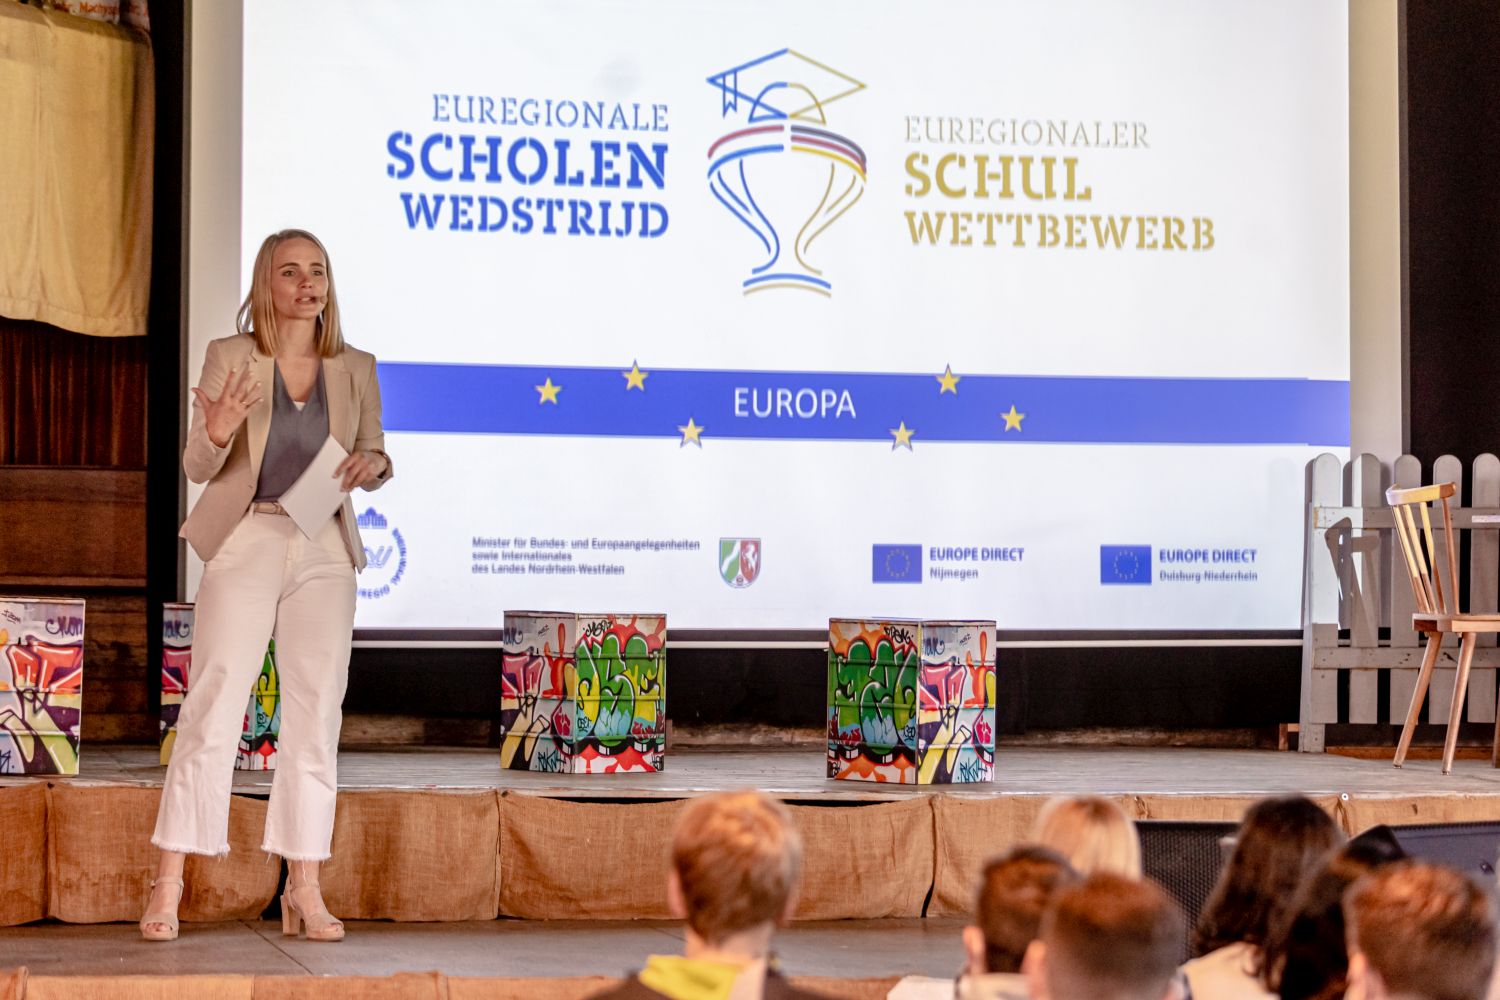 Beiträge zum Thema Europa bei der Preisverleihung des euregionalen Schulwettbewerbs gekürt